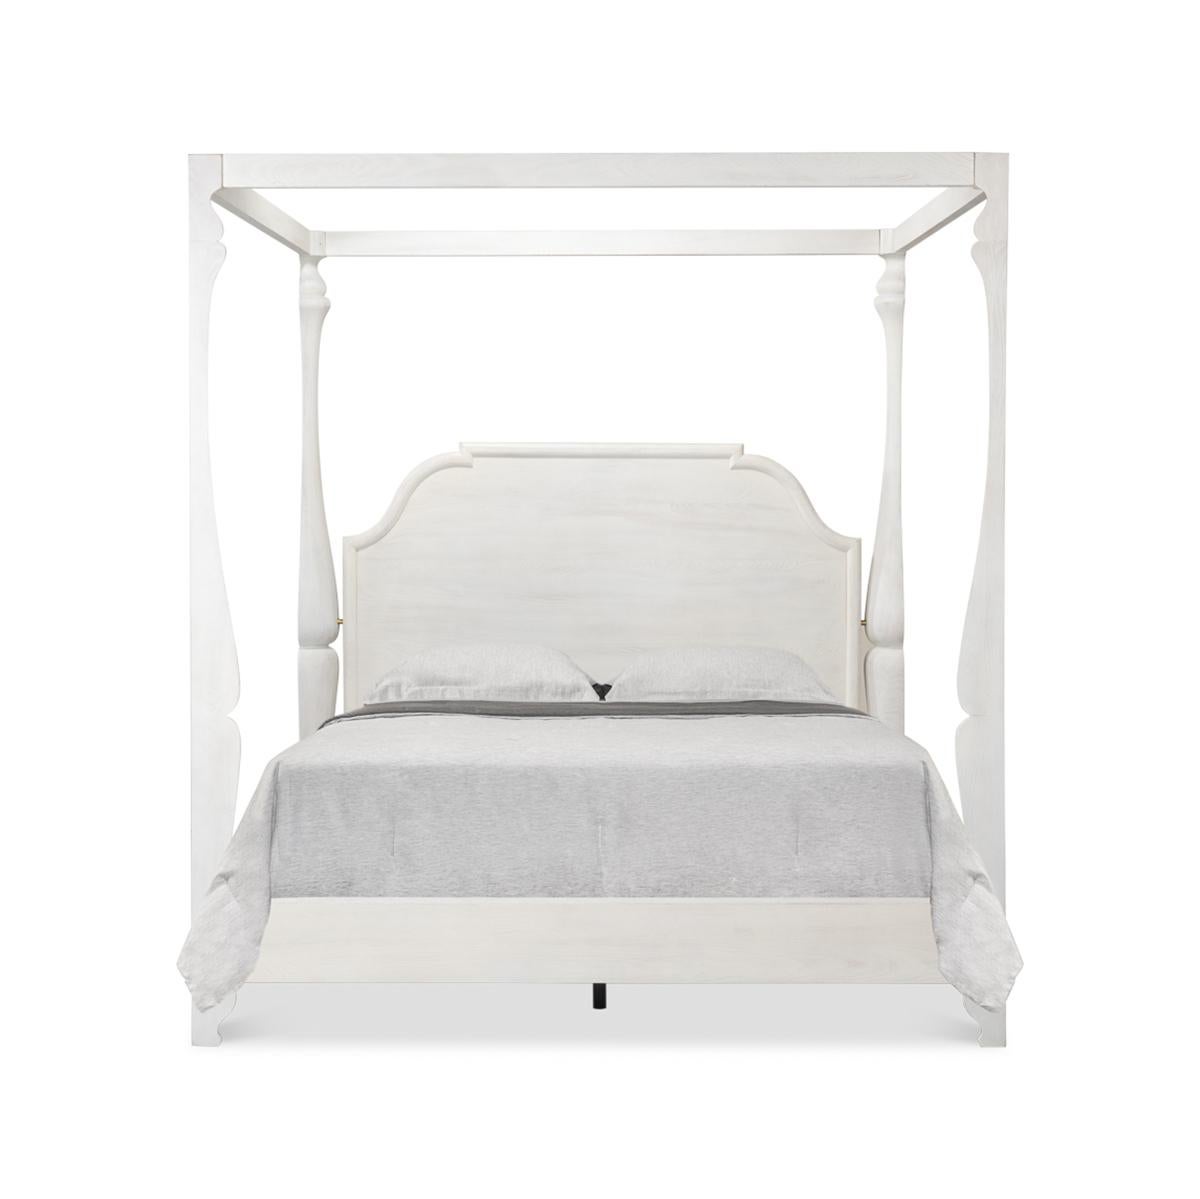 Un lit à baldaquin de style européen avec notre finition blanc bungalow. Ce lit présente de magnifiques montants sculptés en bois de hêtre et rehaussés de fer et de laiton. 

Dimensions : 89